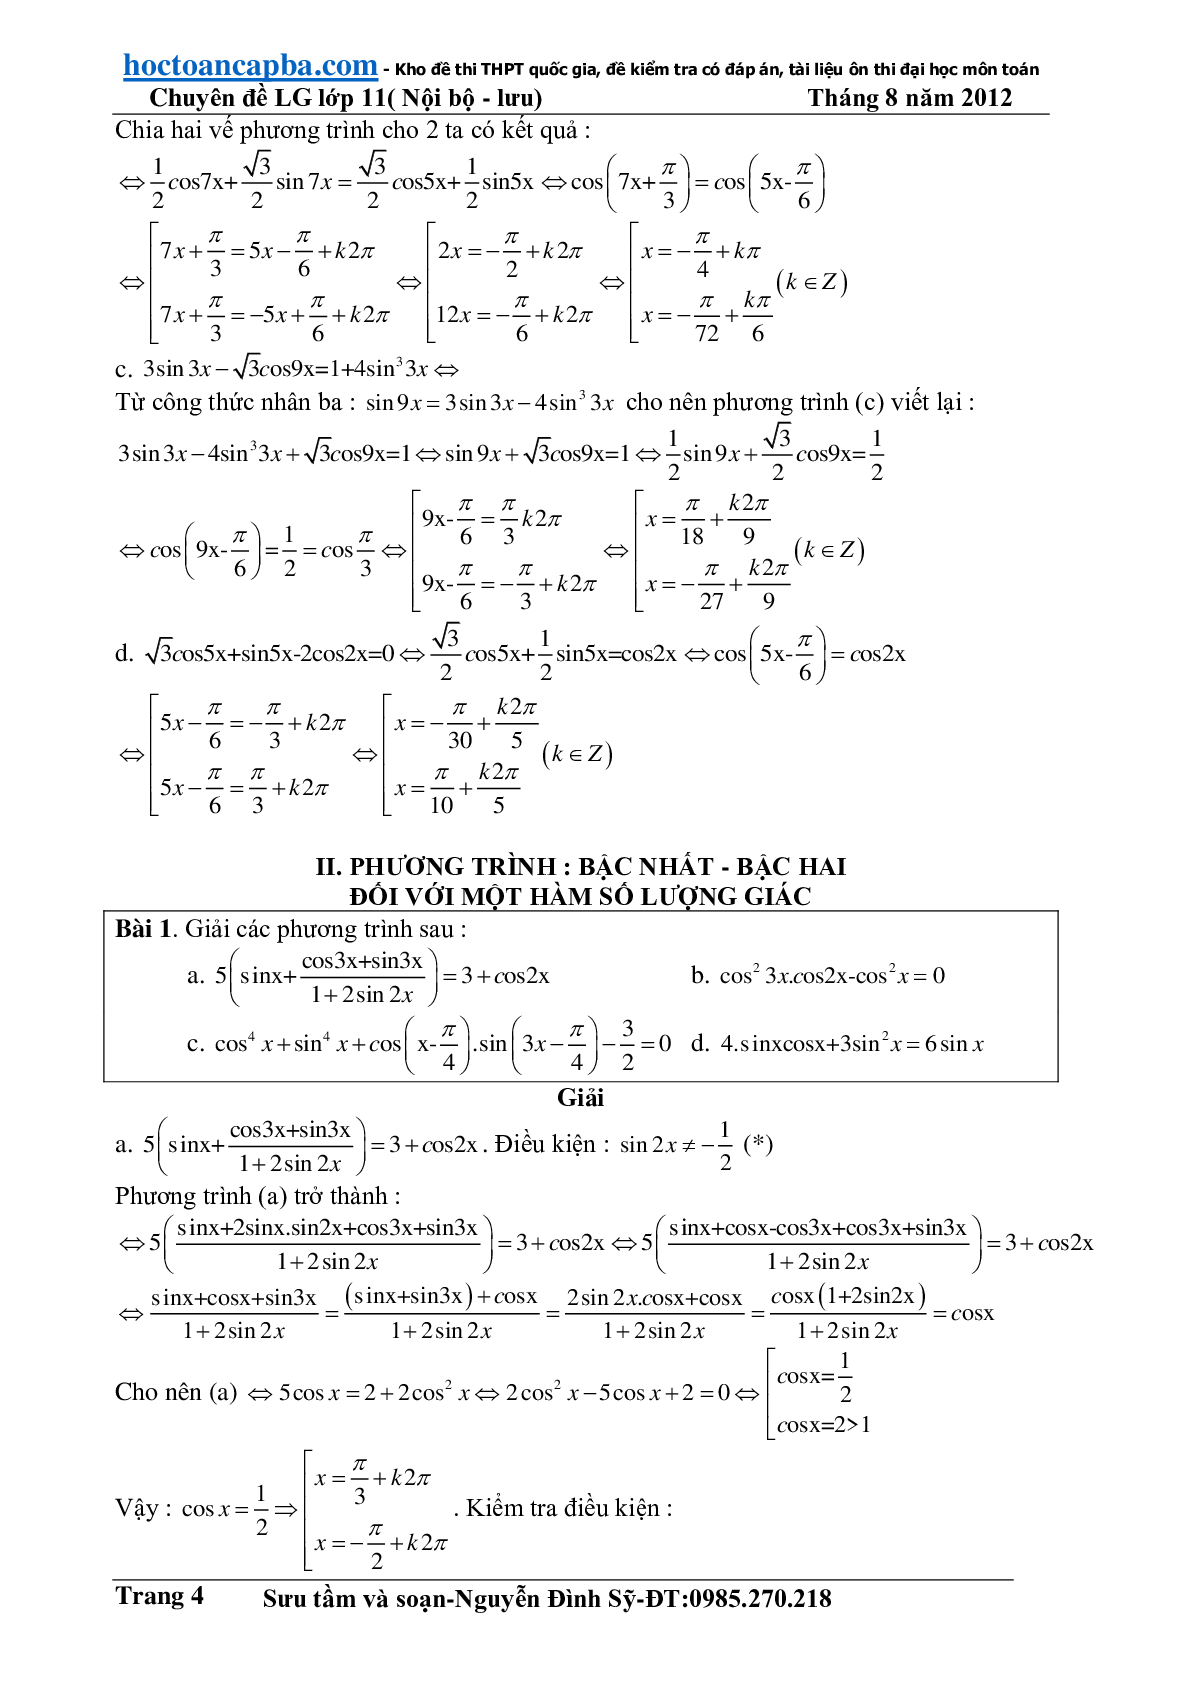 Hướng dẫn giải phương trình lượng giác cơ bản và đơn giản (trang 4)